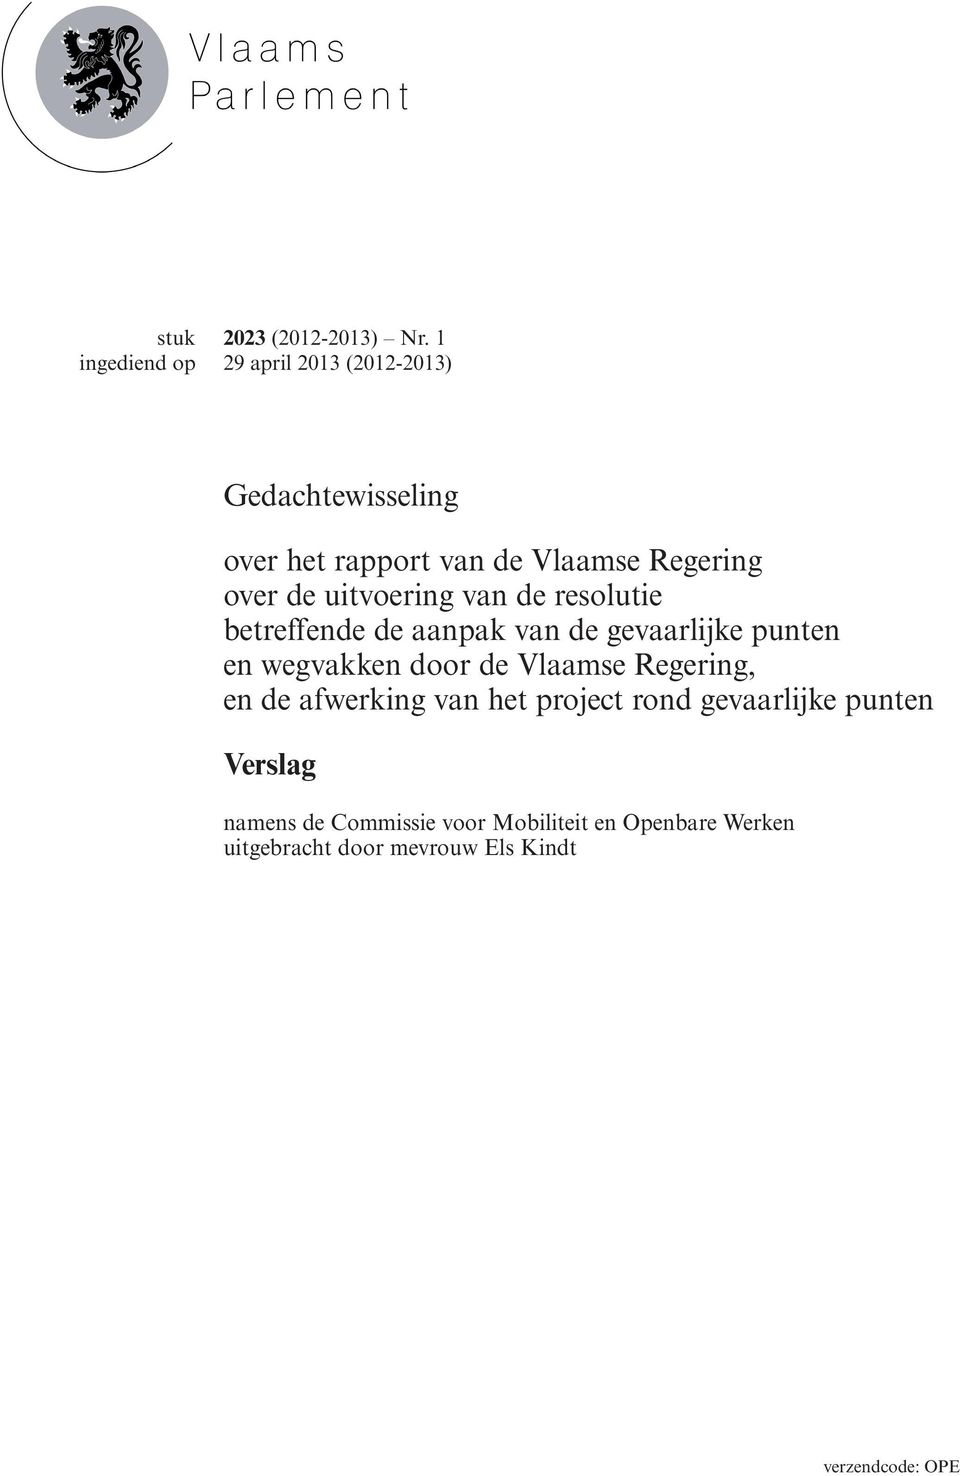 uitvoering van de resolutie betreffende de aanpak van de gevaarlijke punten en wegvakken door de Vlaamse